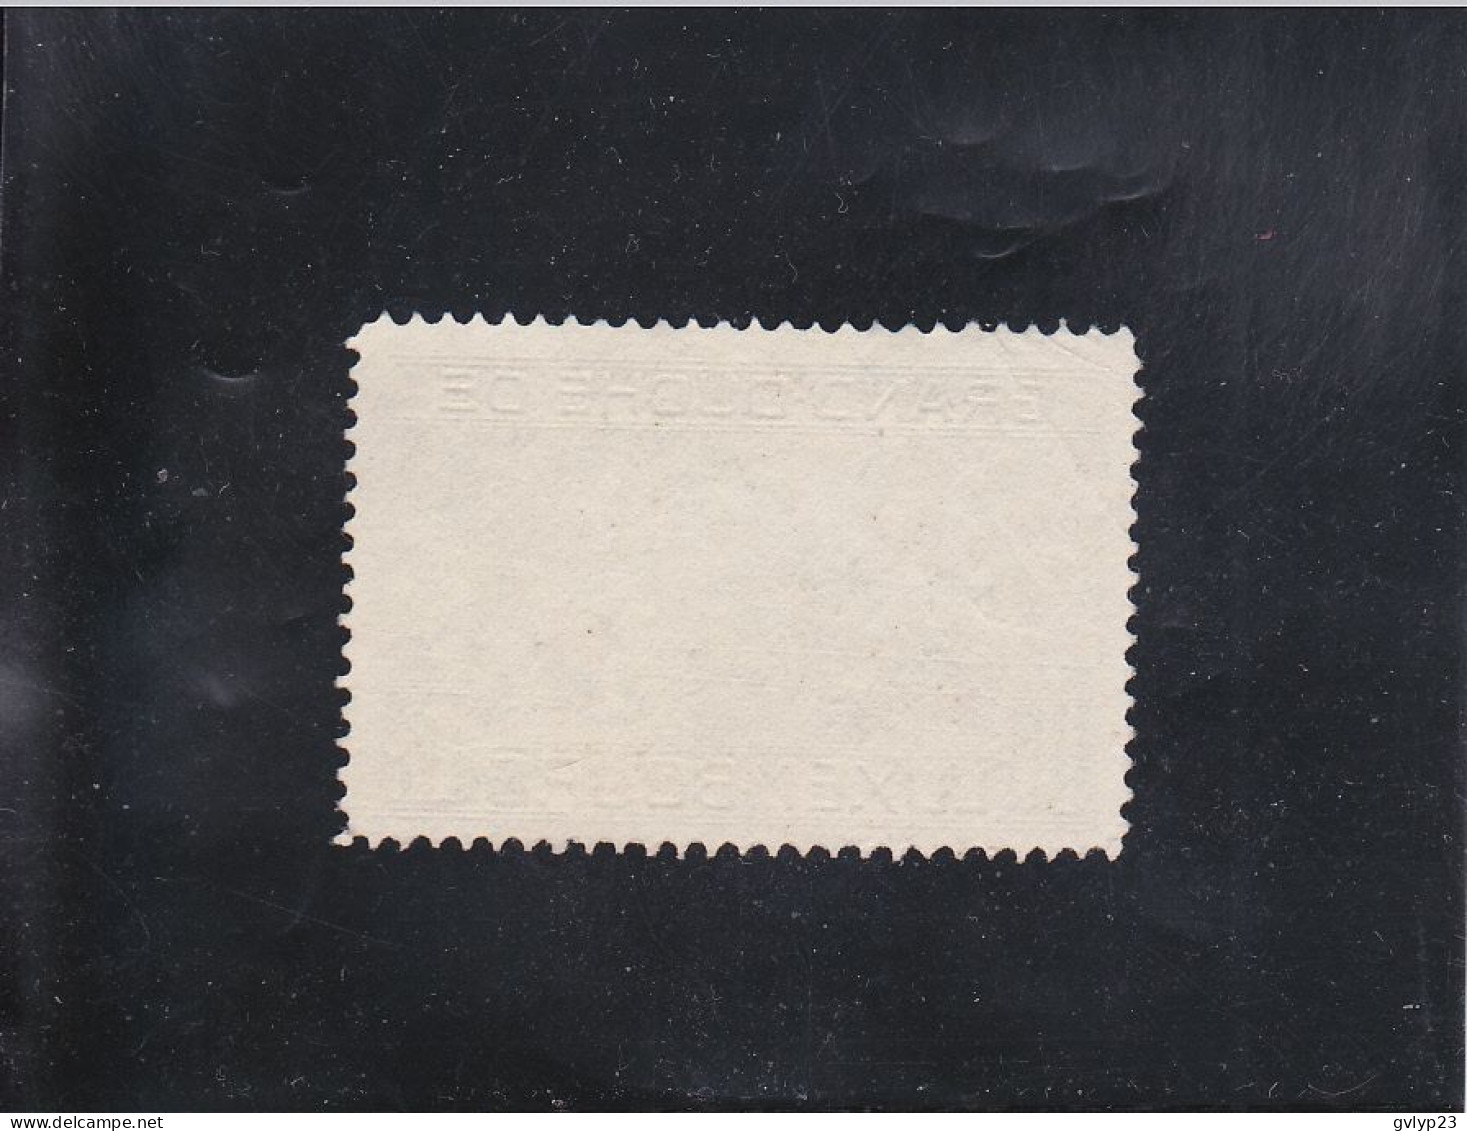 VUE DE LUXEMBOURG 10F NOIR OBLITéRé N° 141 YVERT ET TELLIER 1923 - Used Stamps